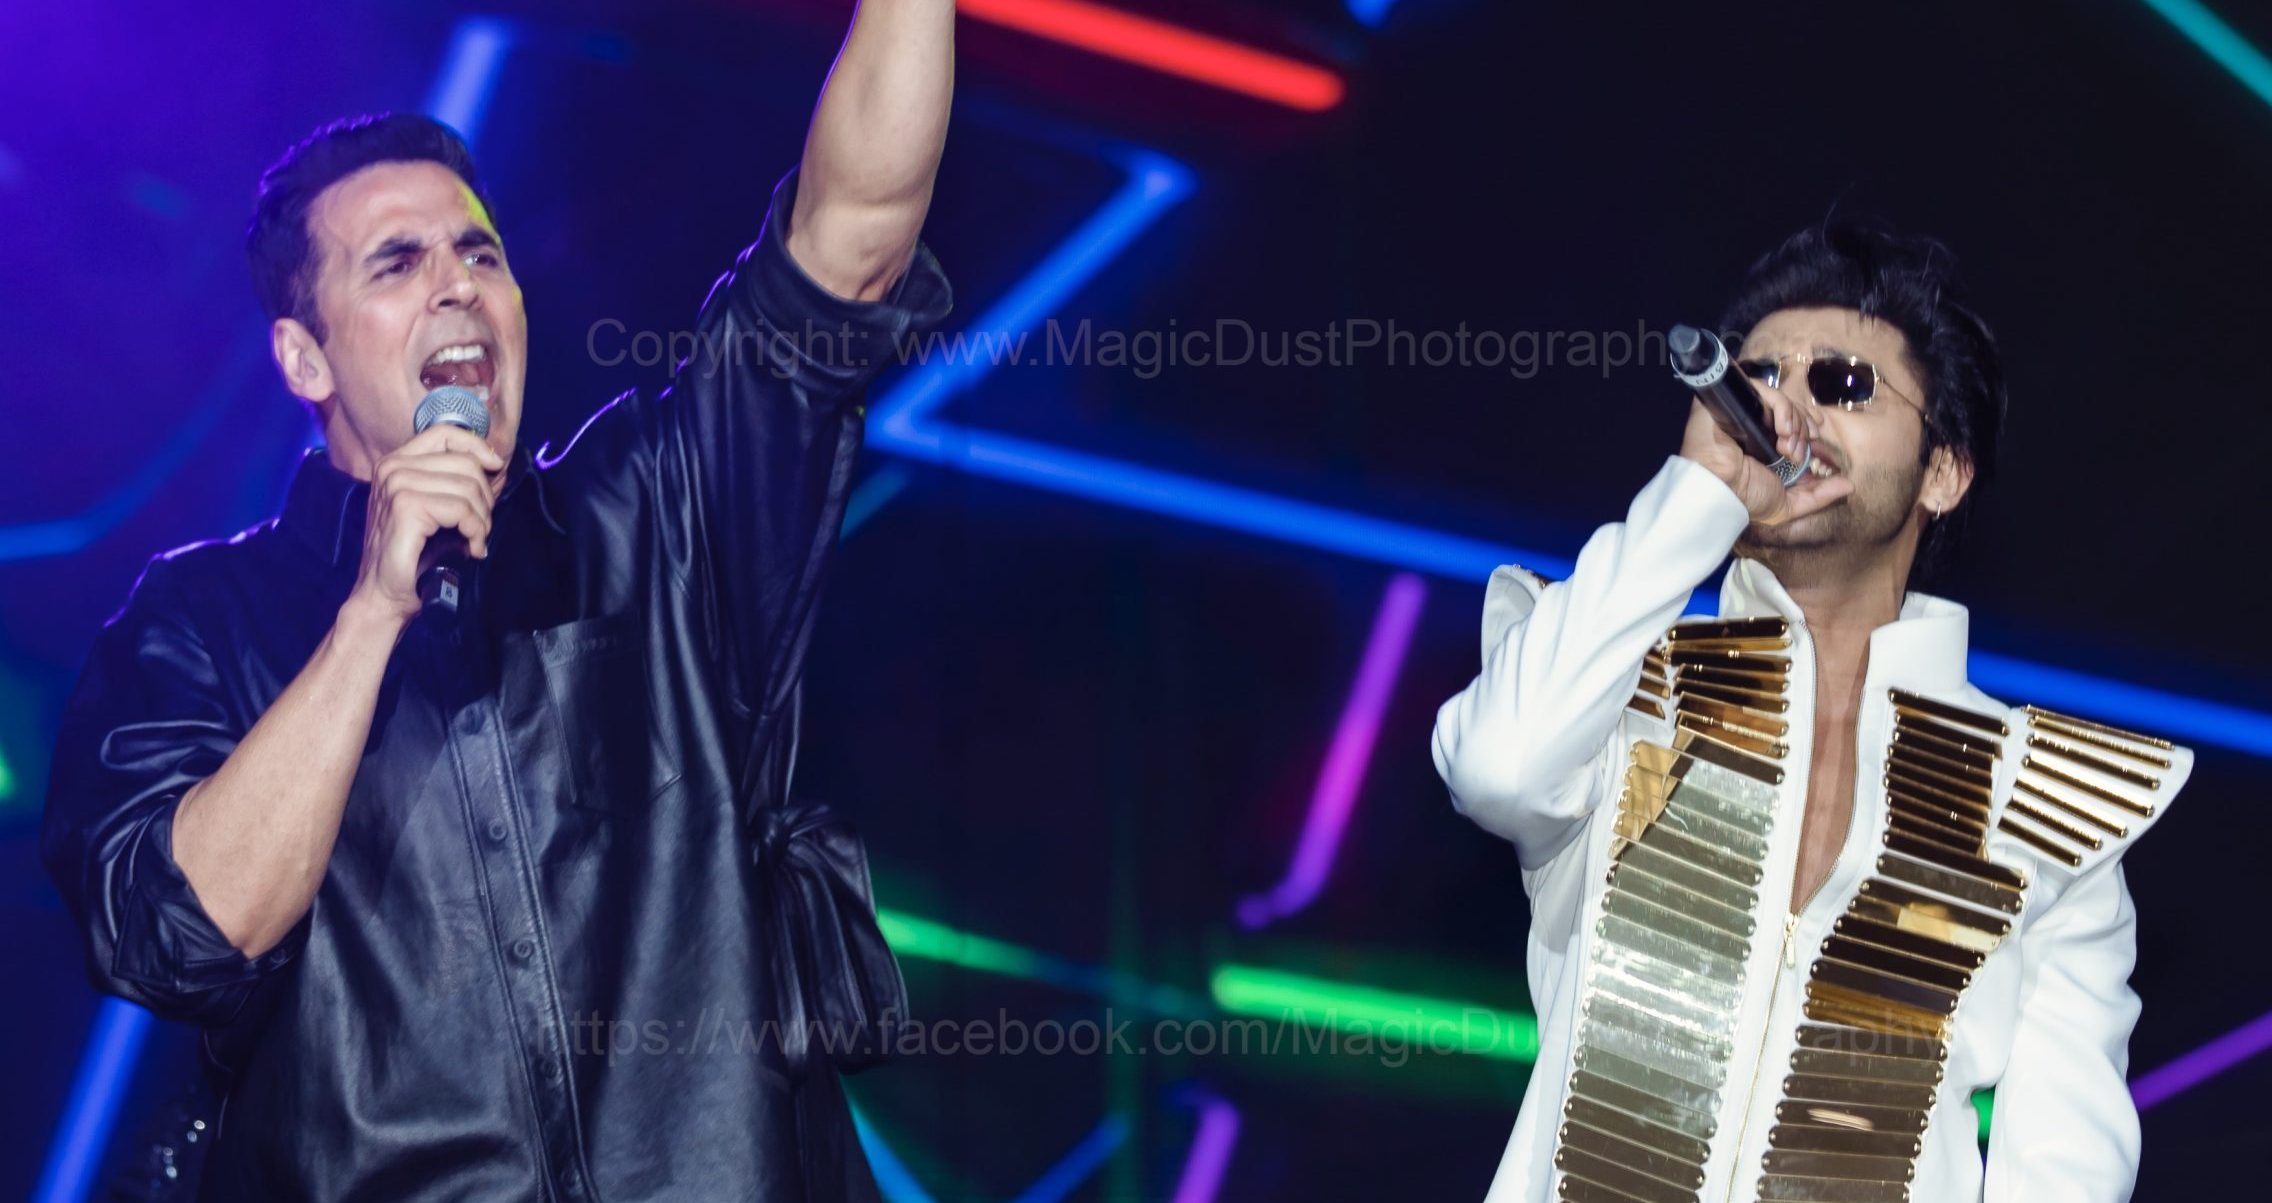 For the Entertainer’s Tour, Stebin Ben tells Akshay Kumar “Grateful for the experience”!